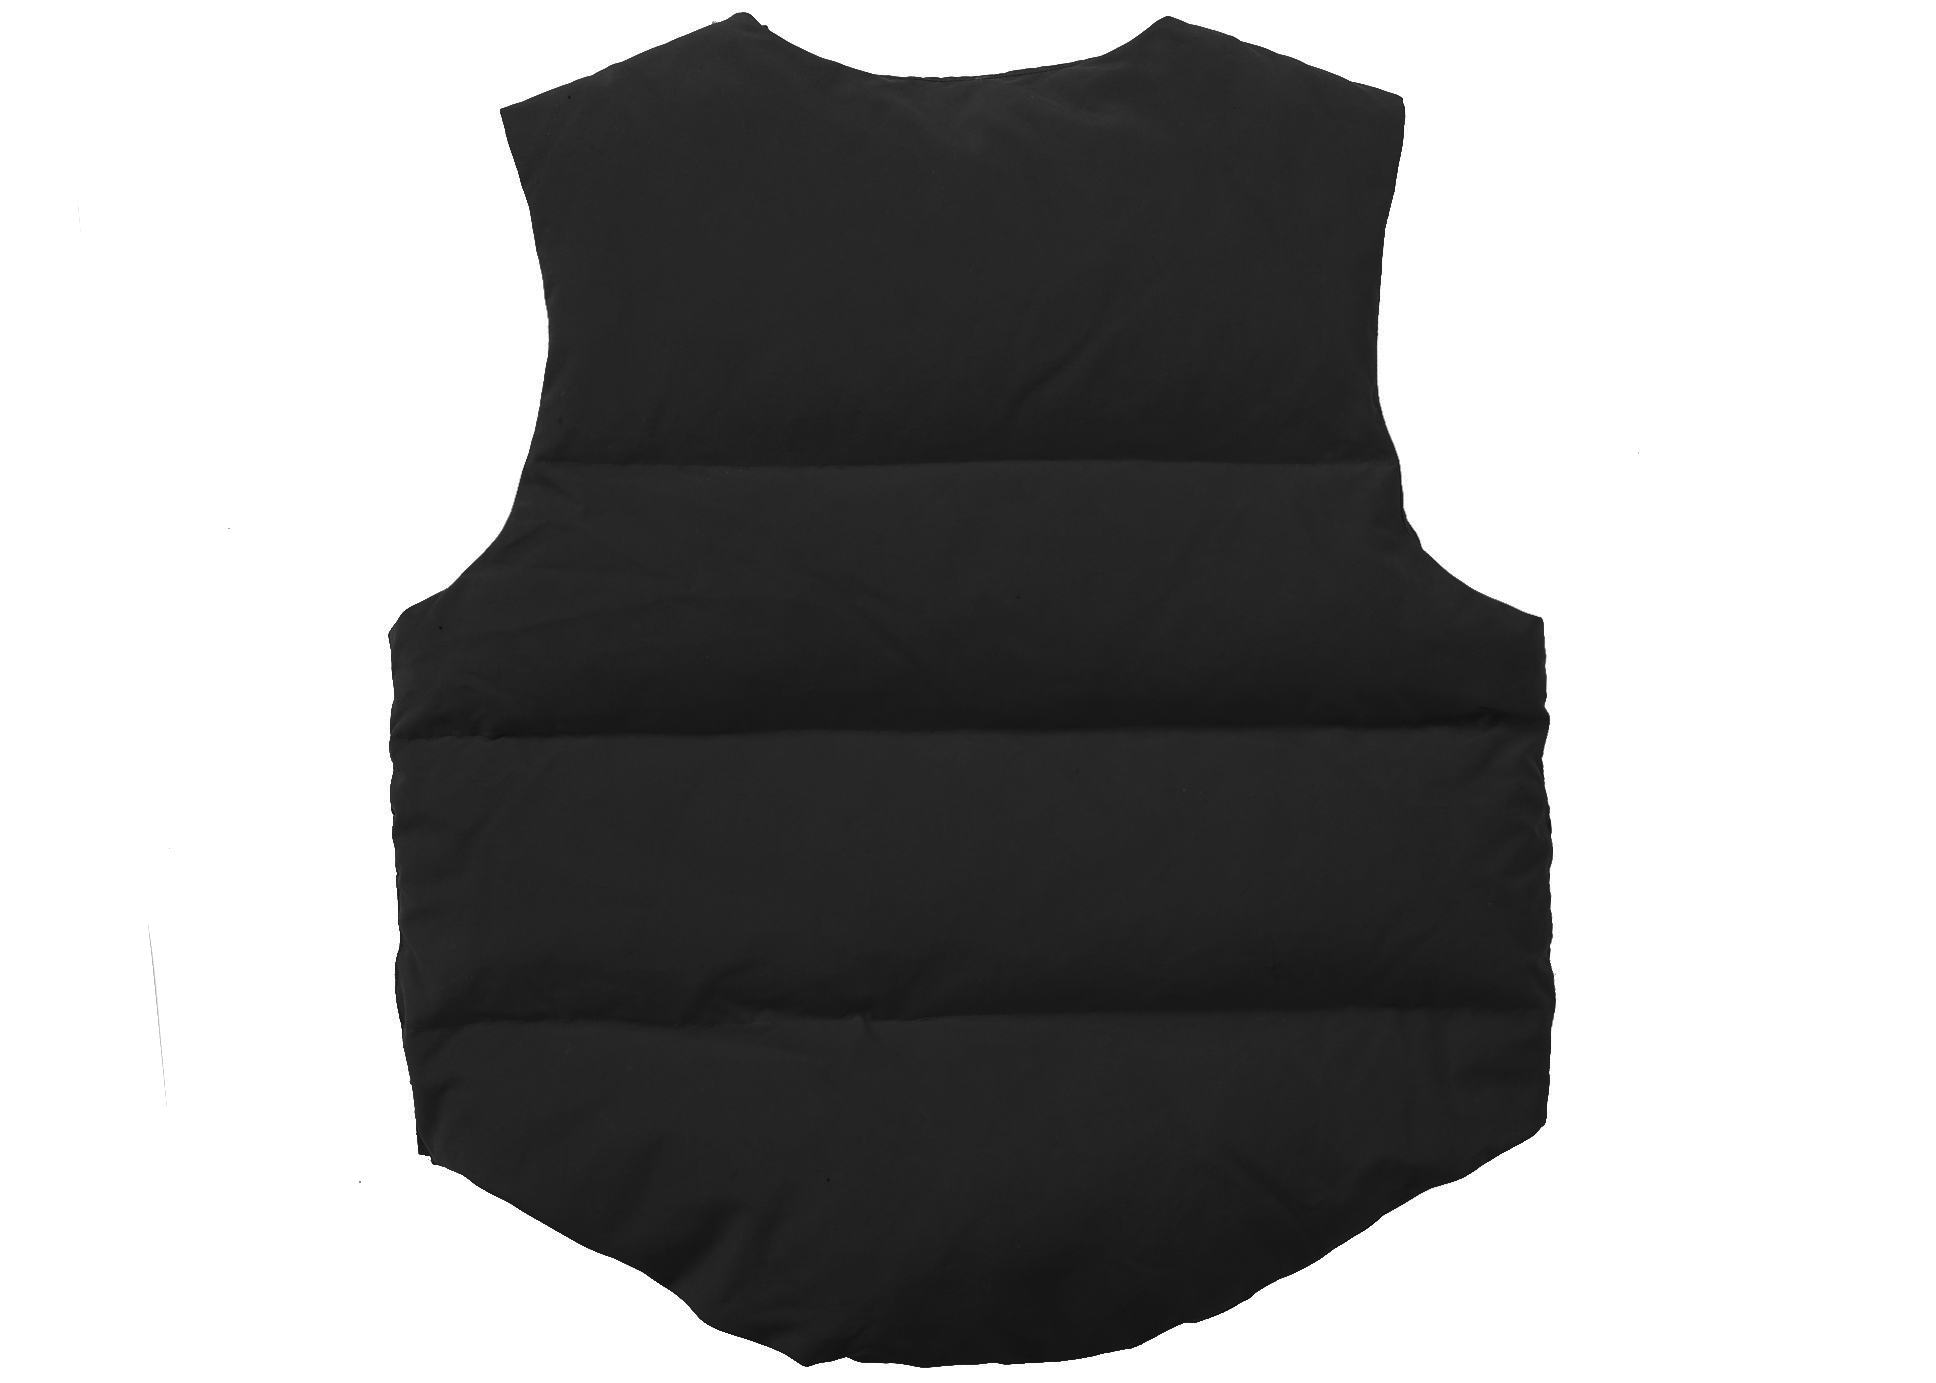 Supreme WTAPS Tactical Down Vest Black